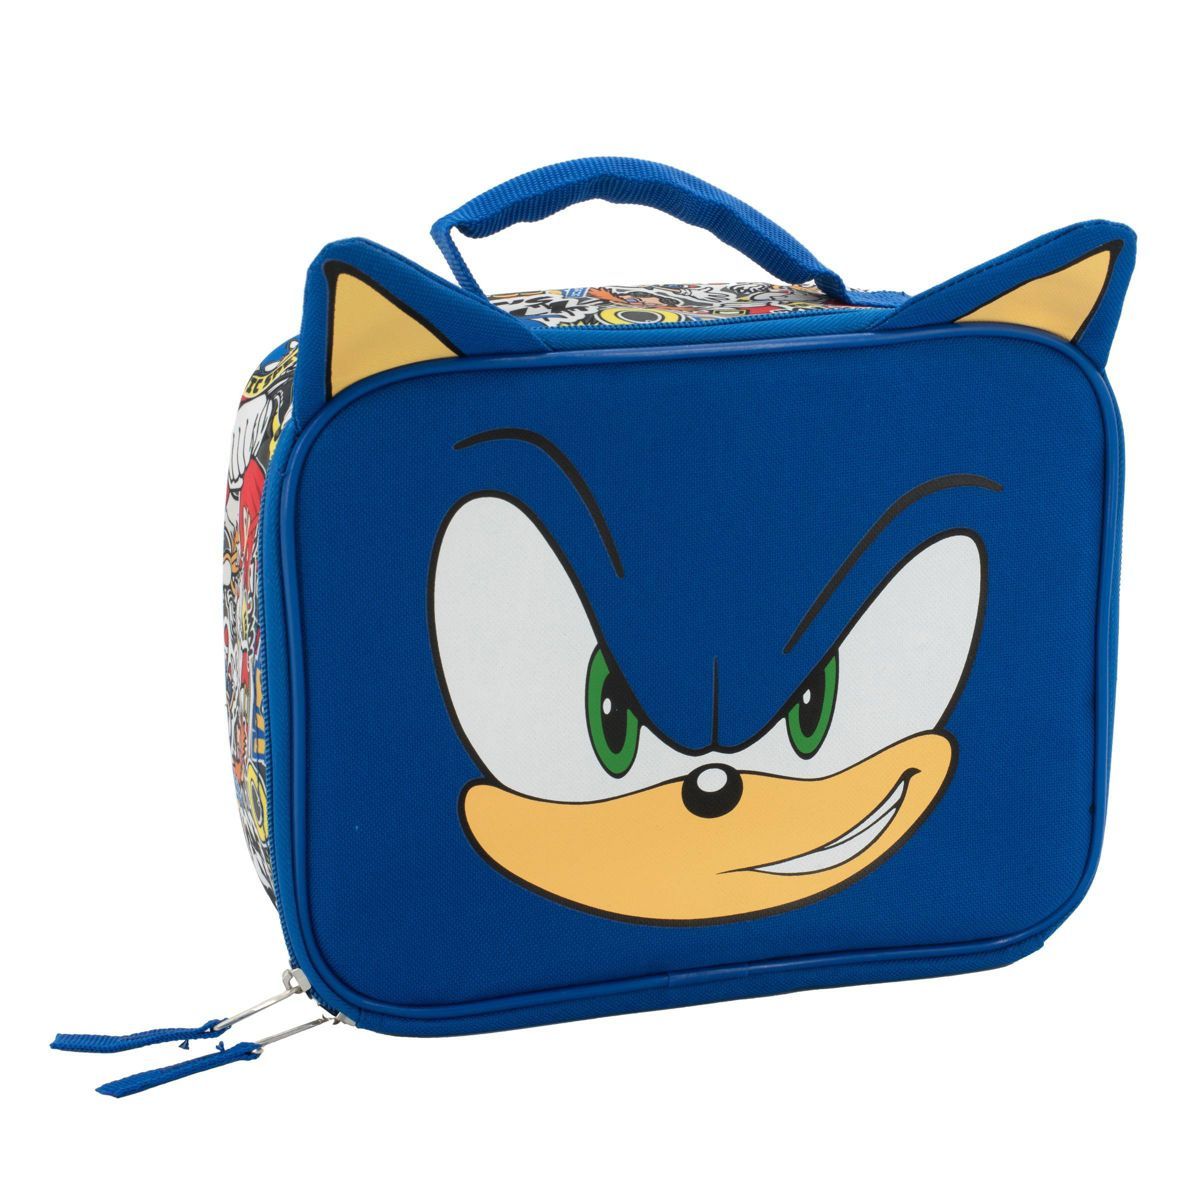 Sonic the Hedgehog Kids' Lunch Bag - Blue | Target